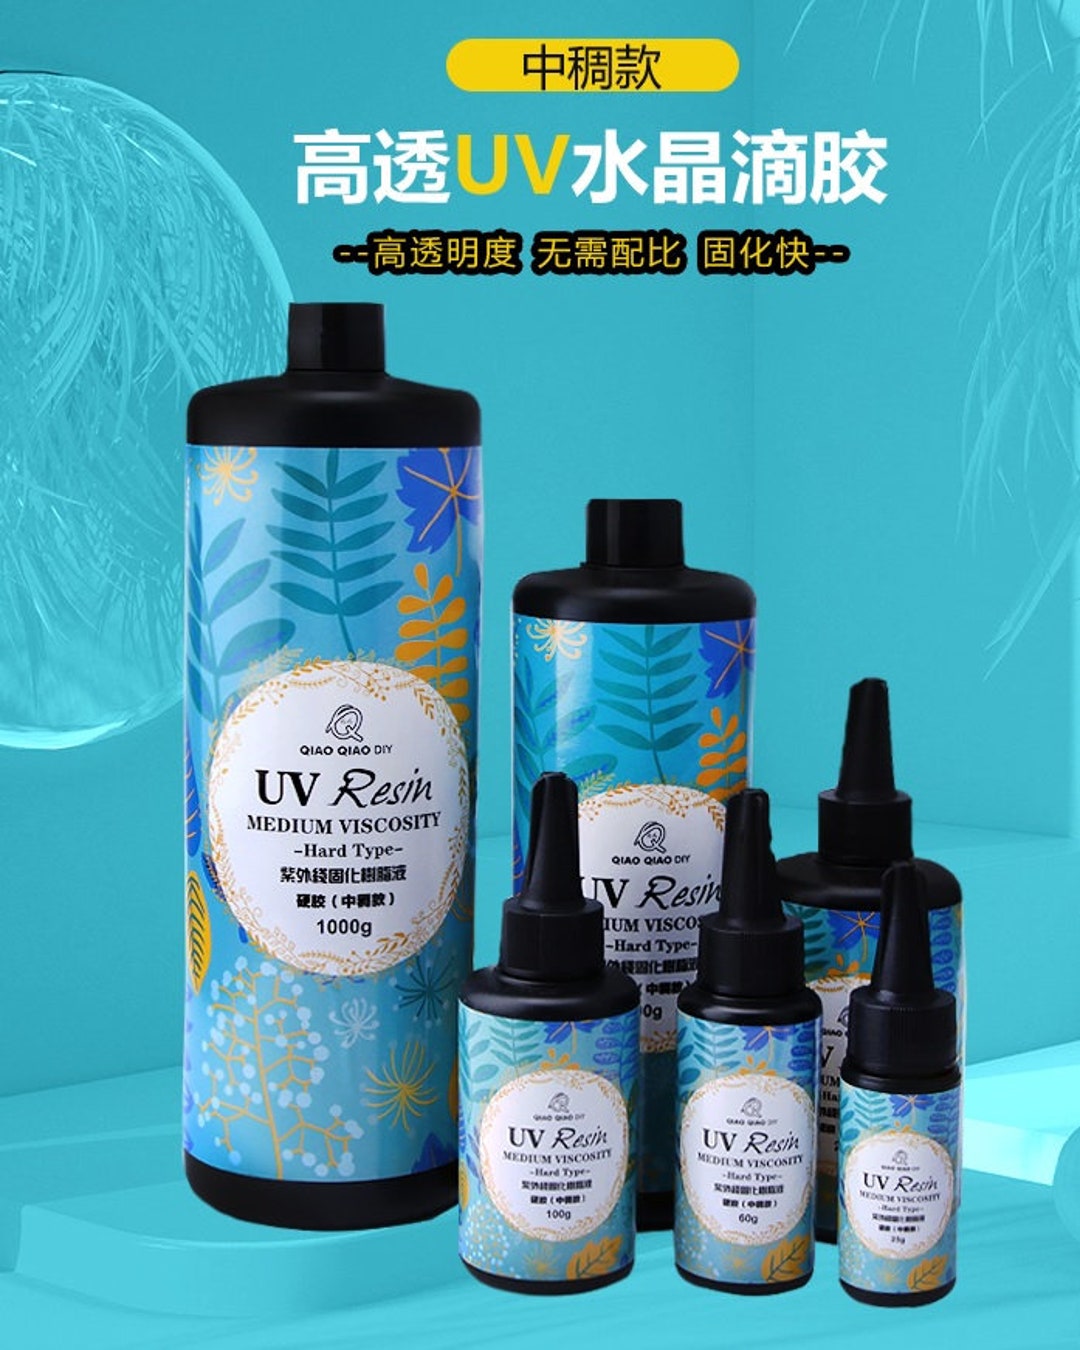 UV Resin - Liquid Craft Resin, Hard Type - for Doming, Bezels